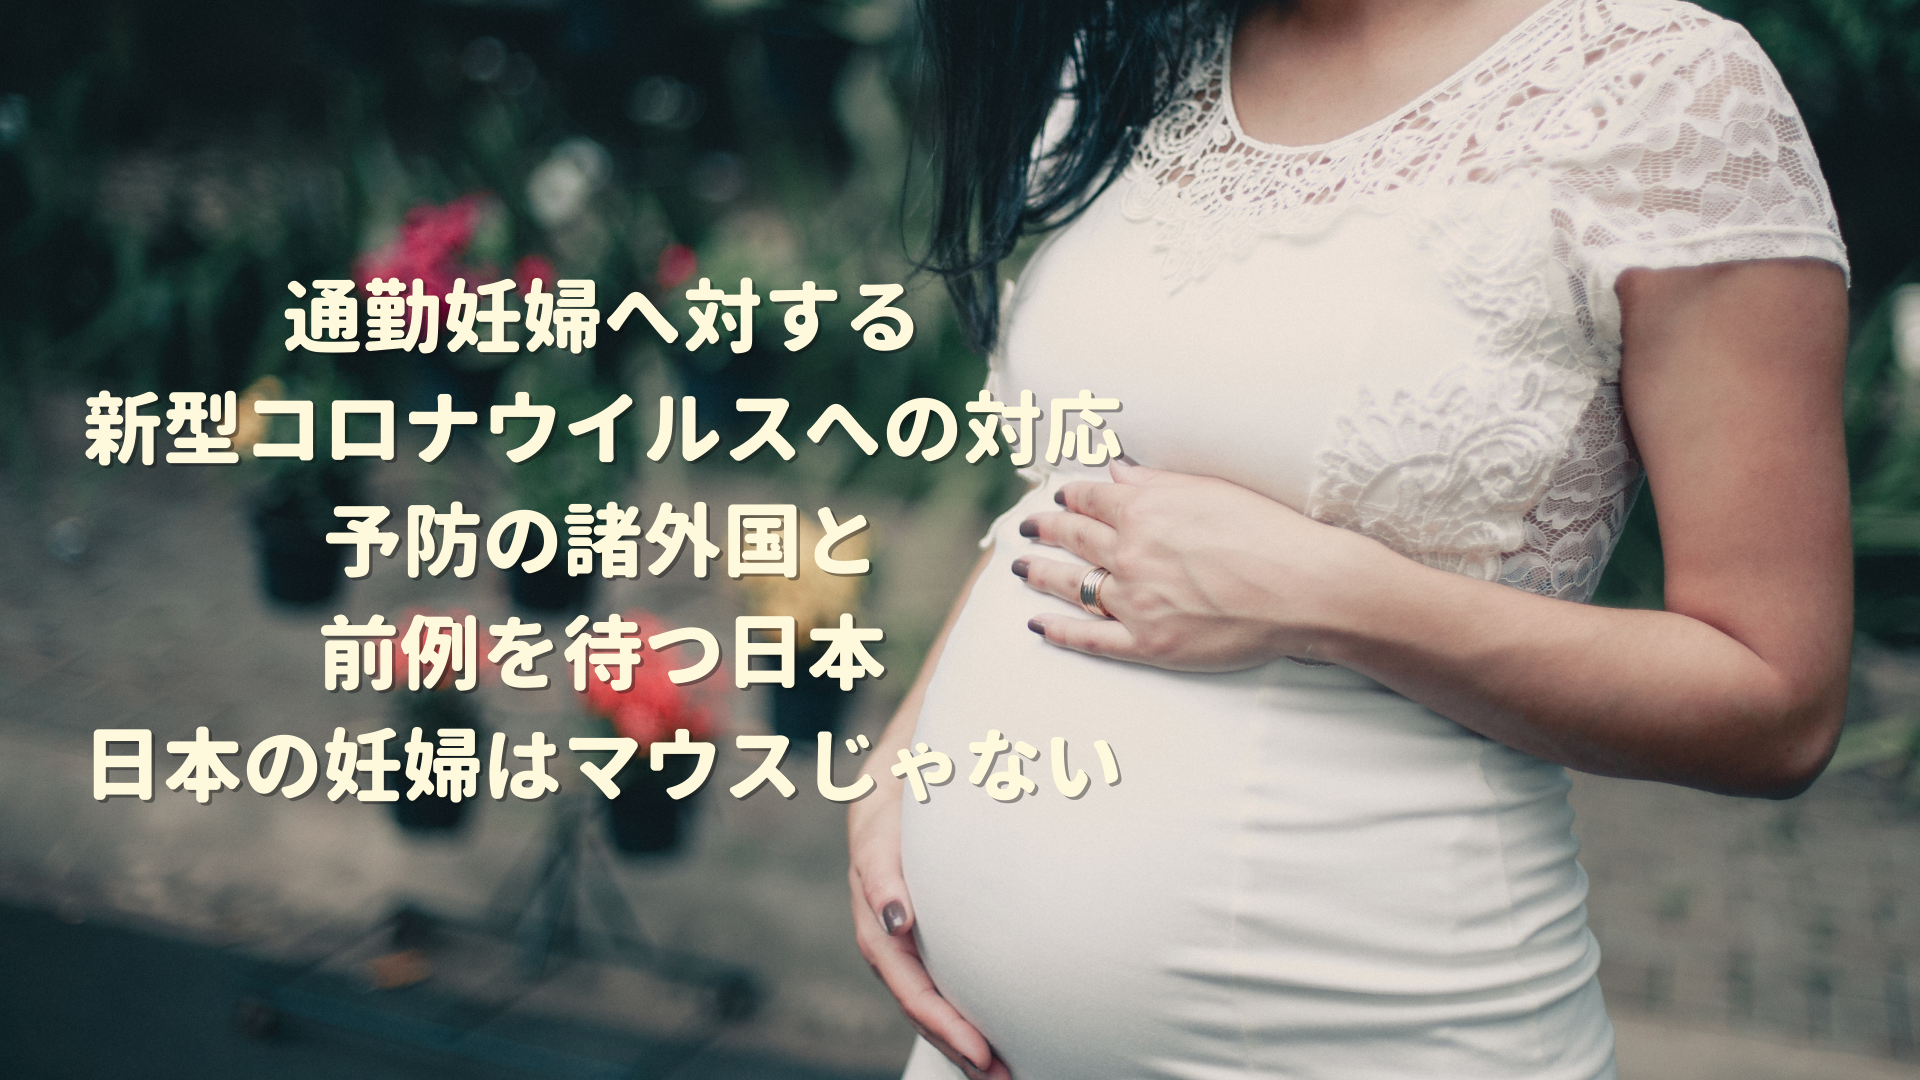 通勤妊婦へ対する新型コロナウイルスへの対応。予防の諸外国と前例を待つ日本。日本の妊婦はマウスじゃない。